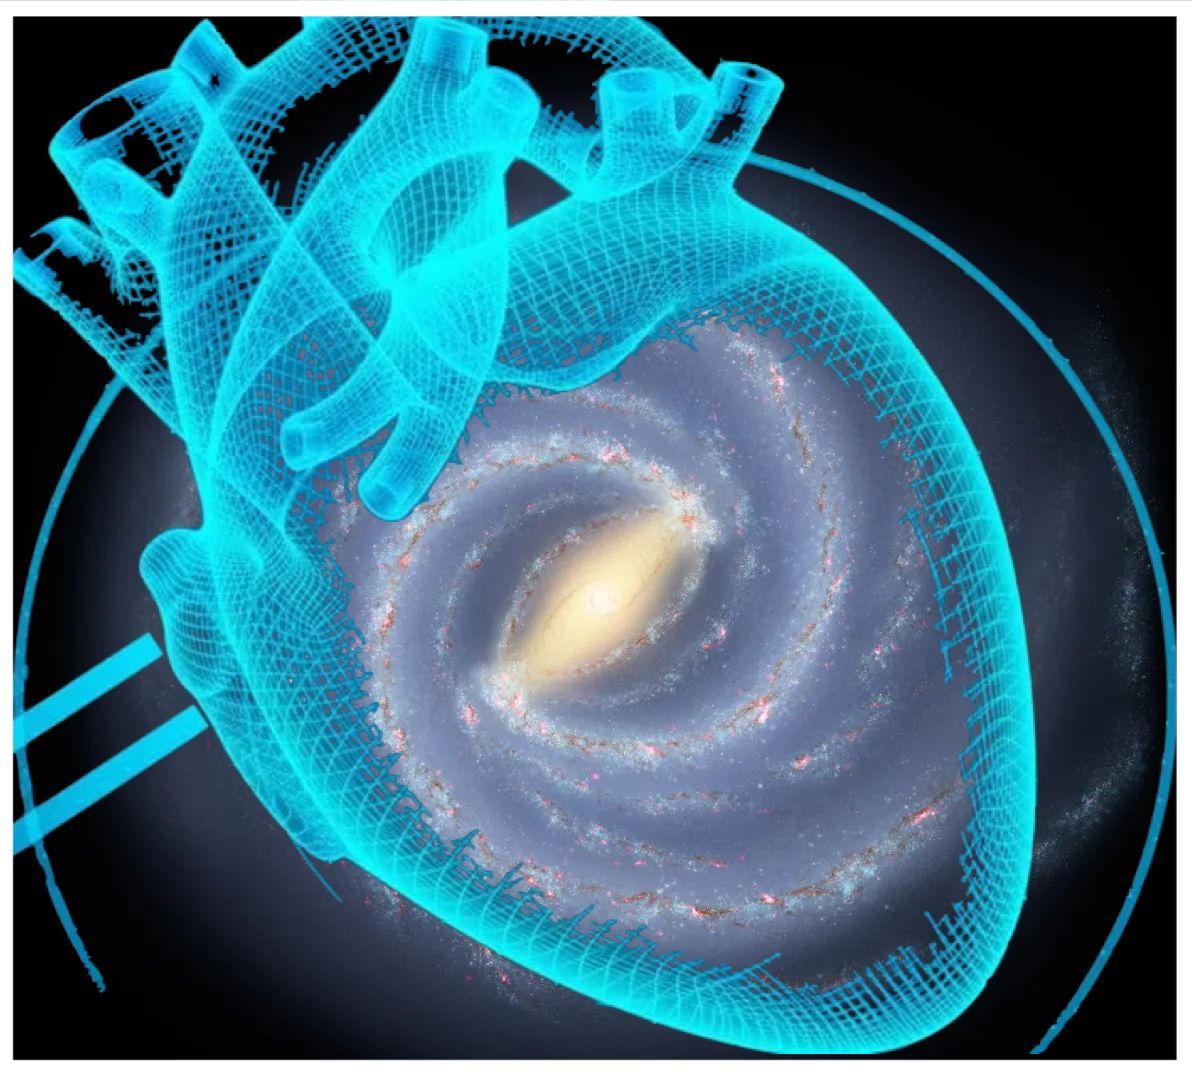 Ilustración de la nuestra galaxia La Vía Láctea superpuesta en la imagen de un corazón humano.